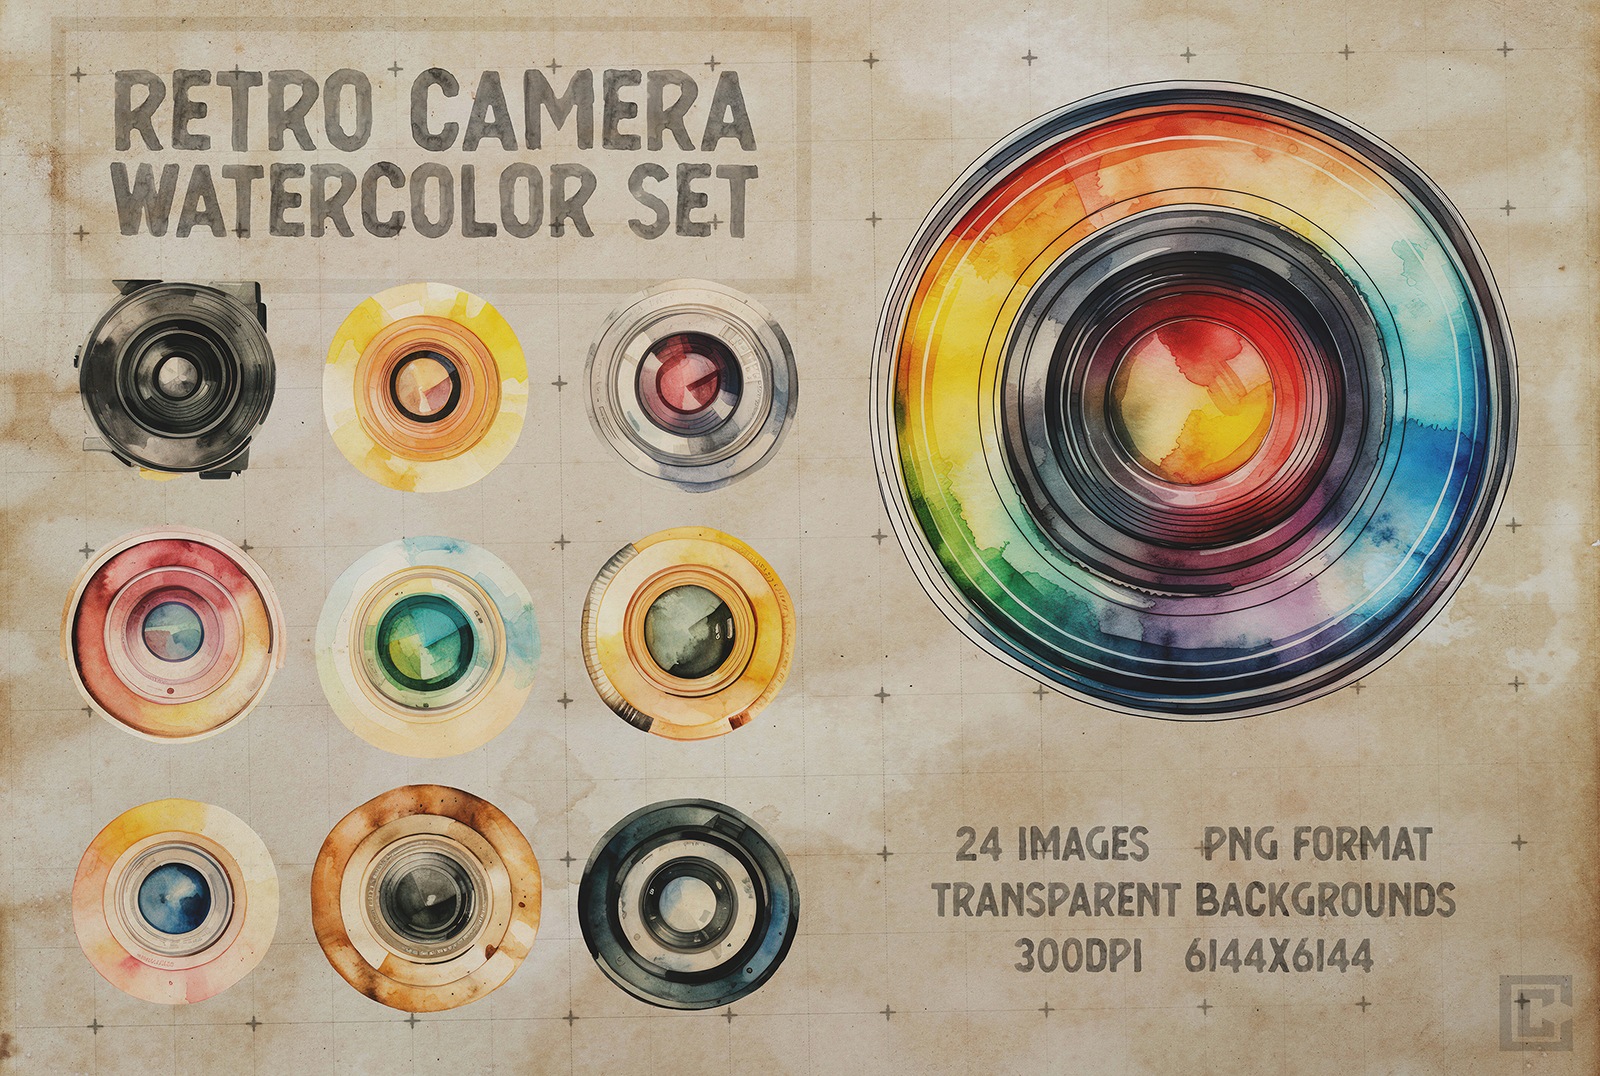 Retro Watercolor Camera Graphic Pack